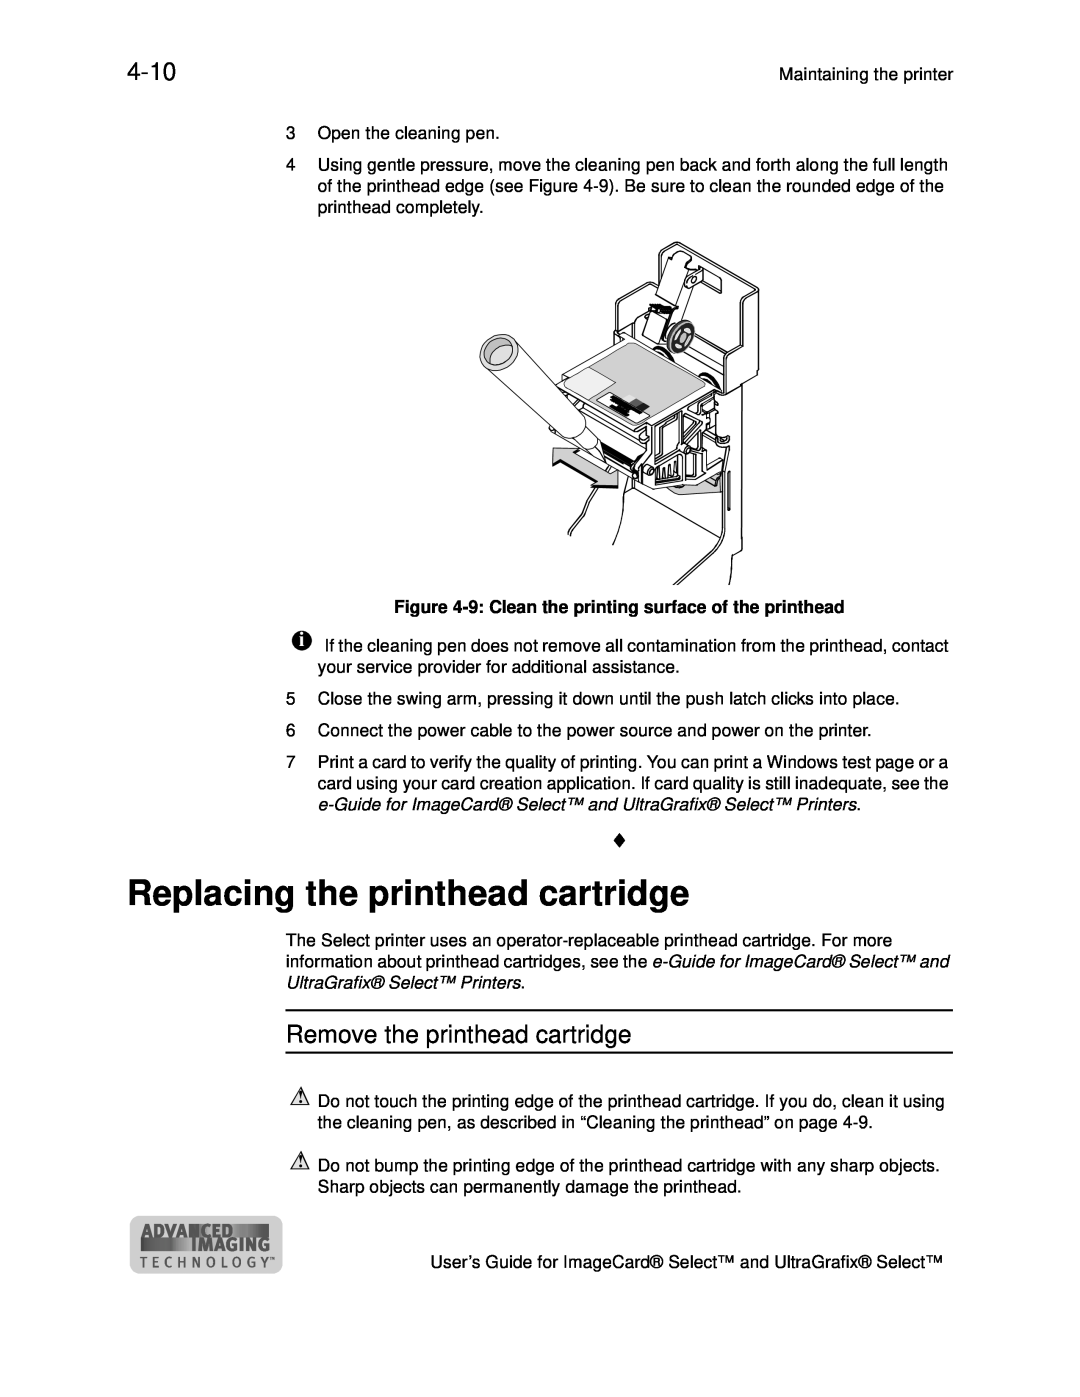 Datacard Group ImageCard SelectTM and UltraGrafix SelectTM Printers manual Replacing the printhead cartridge, 4-10 